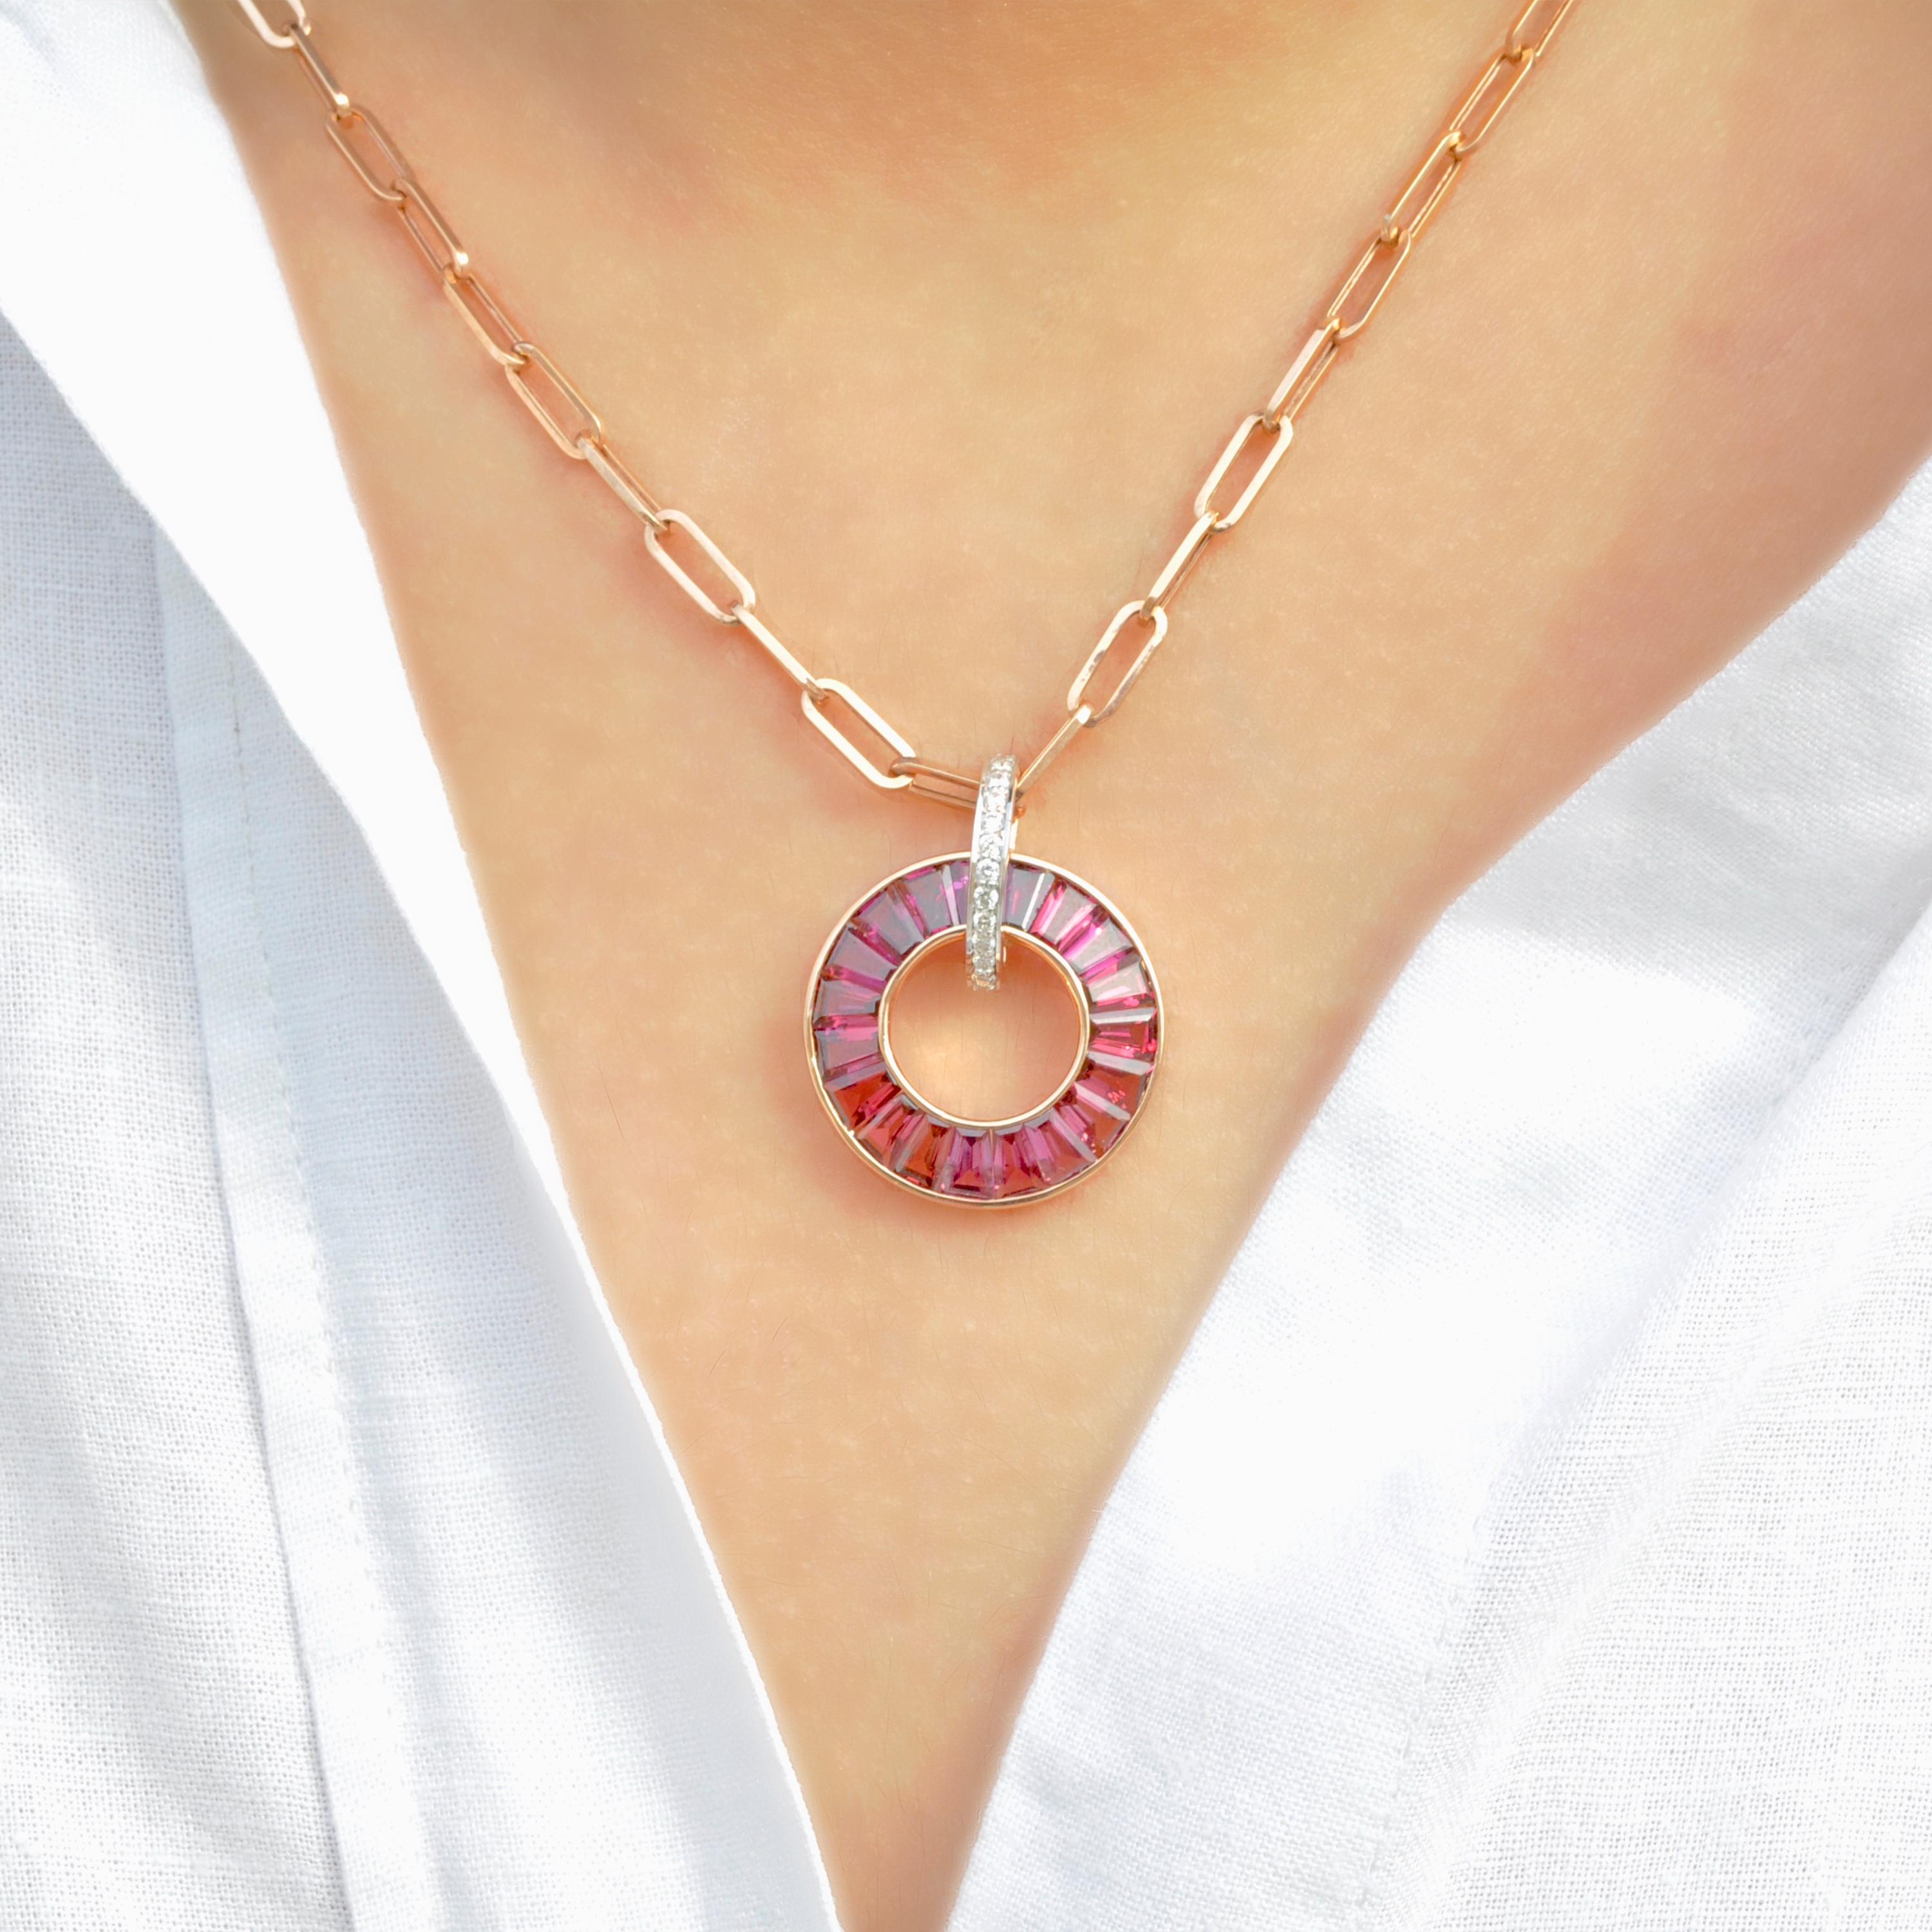 Voici notre collier à pendentif circulaire en or rose 18 carats avec grenat rhodolite et diamant, une fusion fascinante de sophistication et de design contemporain. Réalisé en or 18 carats, ce pendentif présente un cercle gracieux orné de pierres